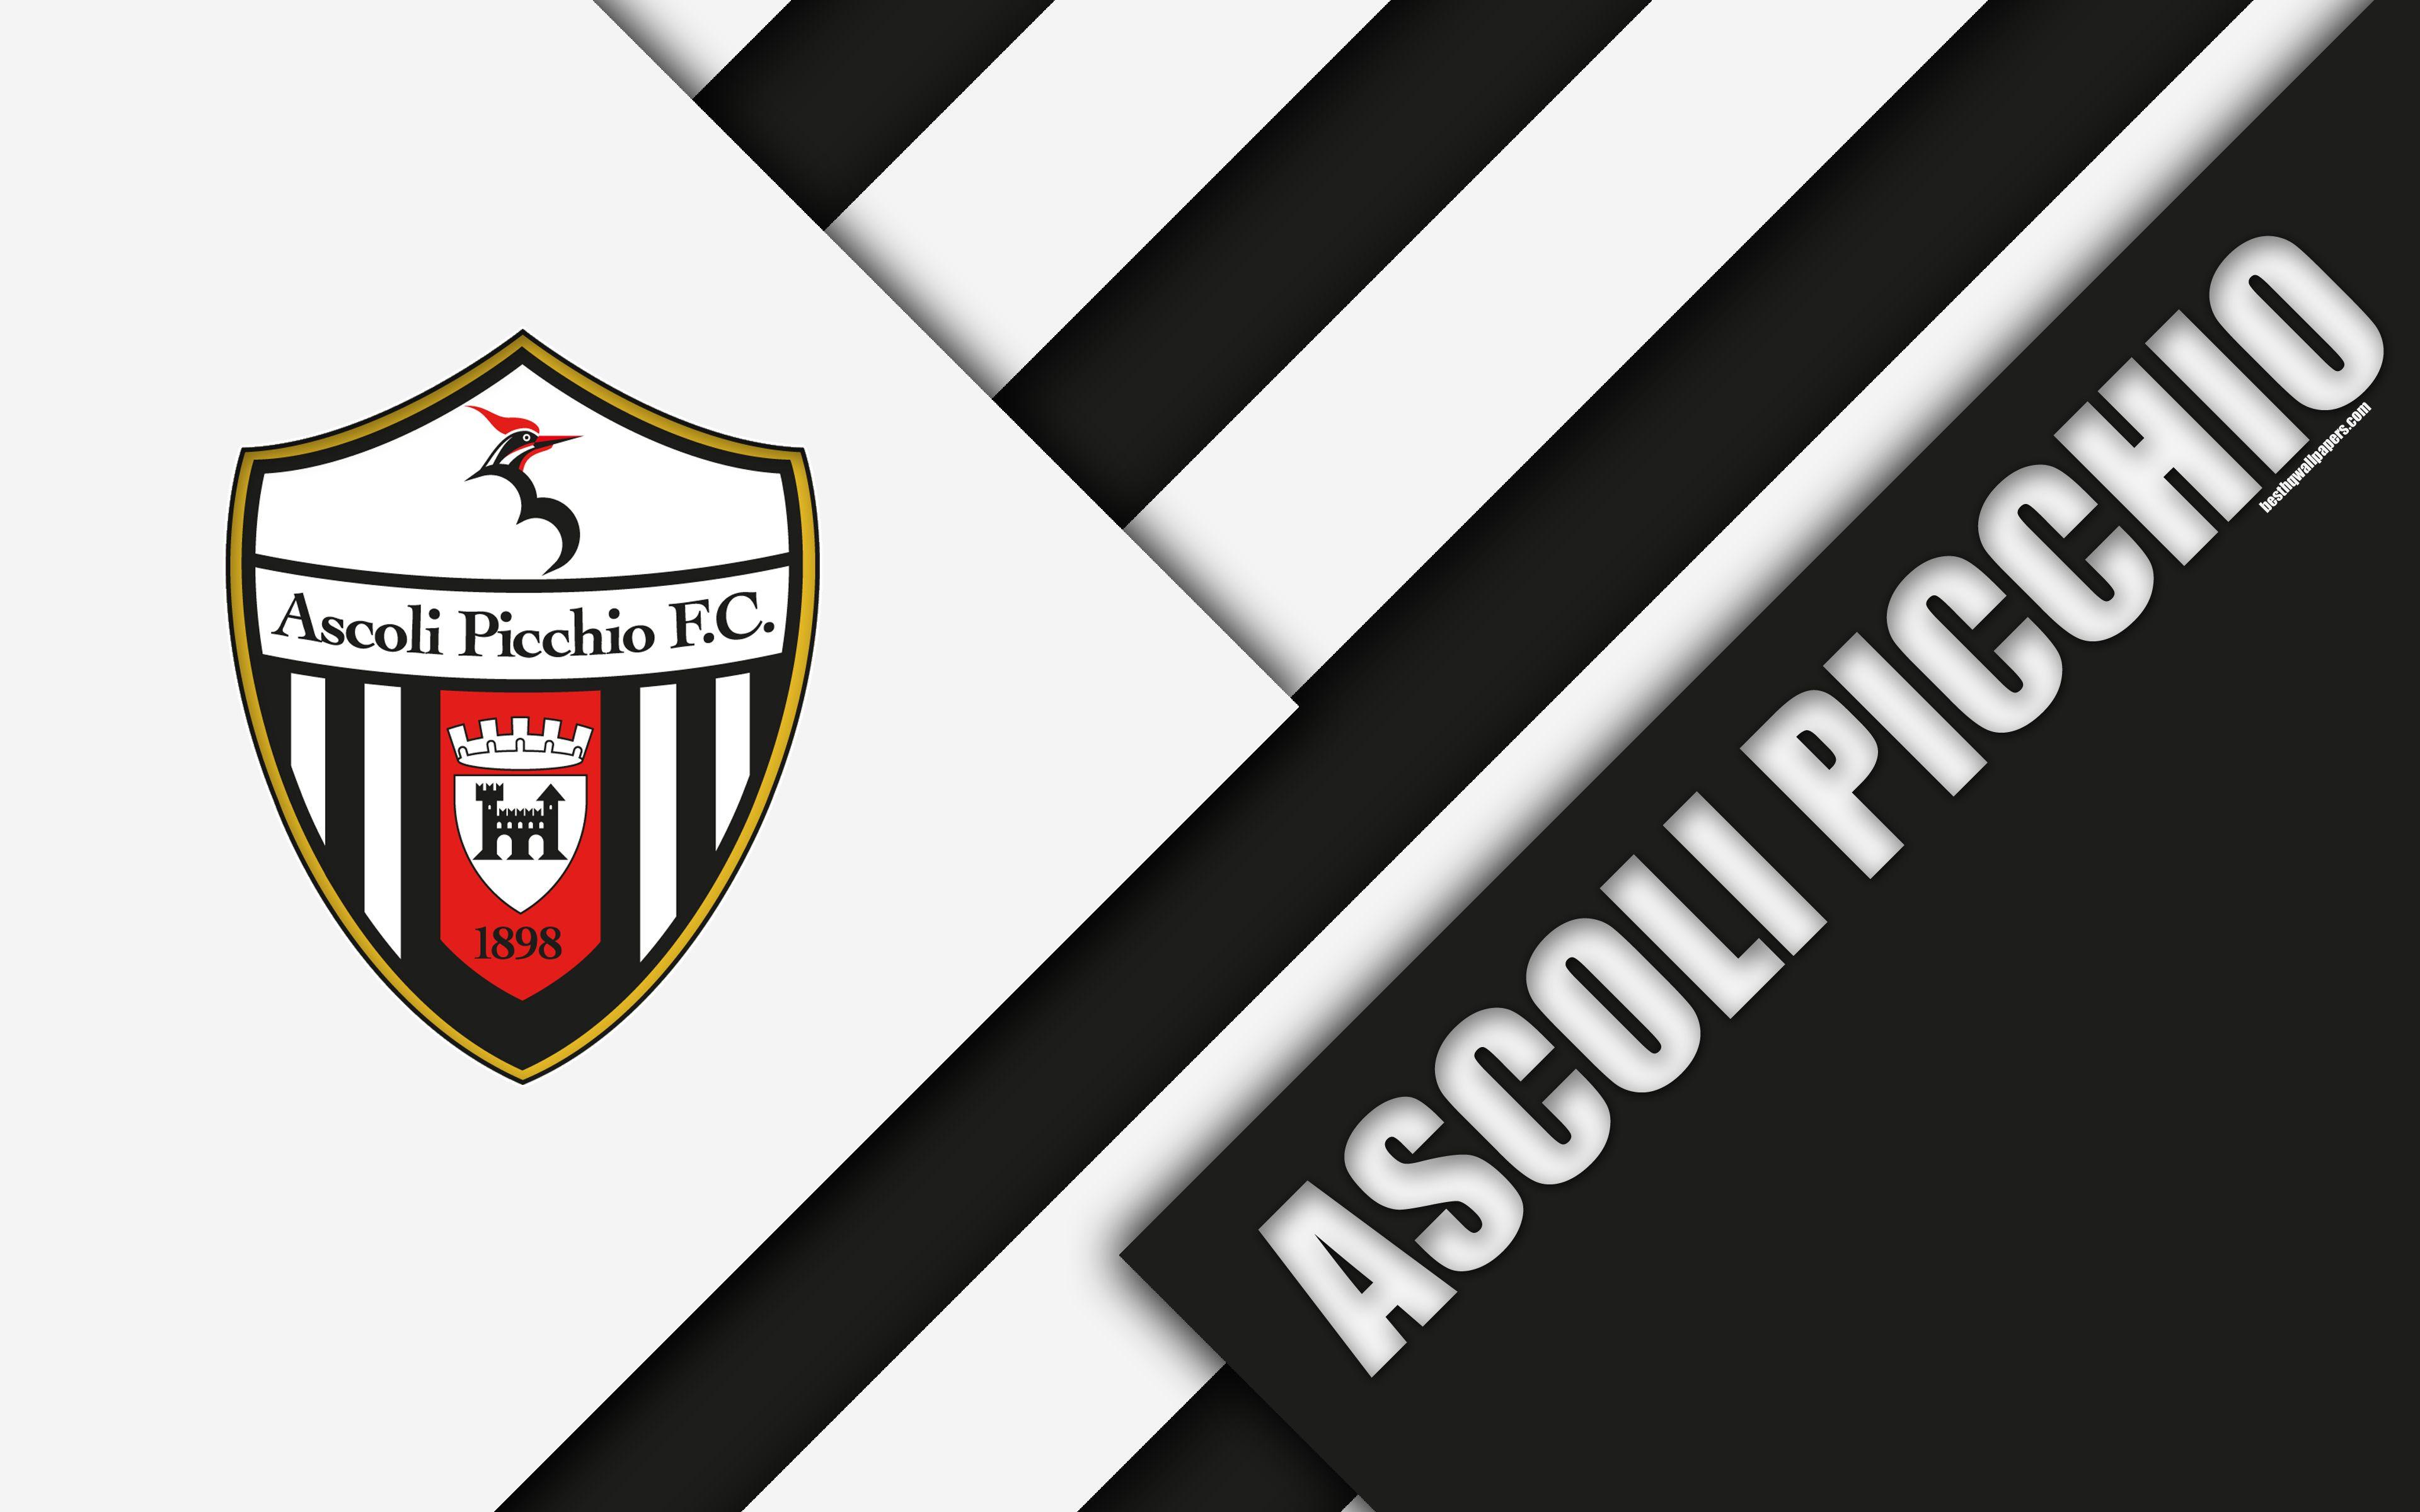 Ascoli Logo - Download wallpaper Ascoli Picchio FC, 4k, material design, logo